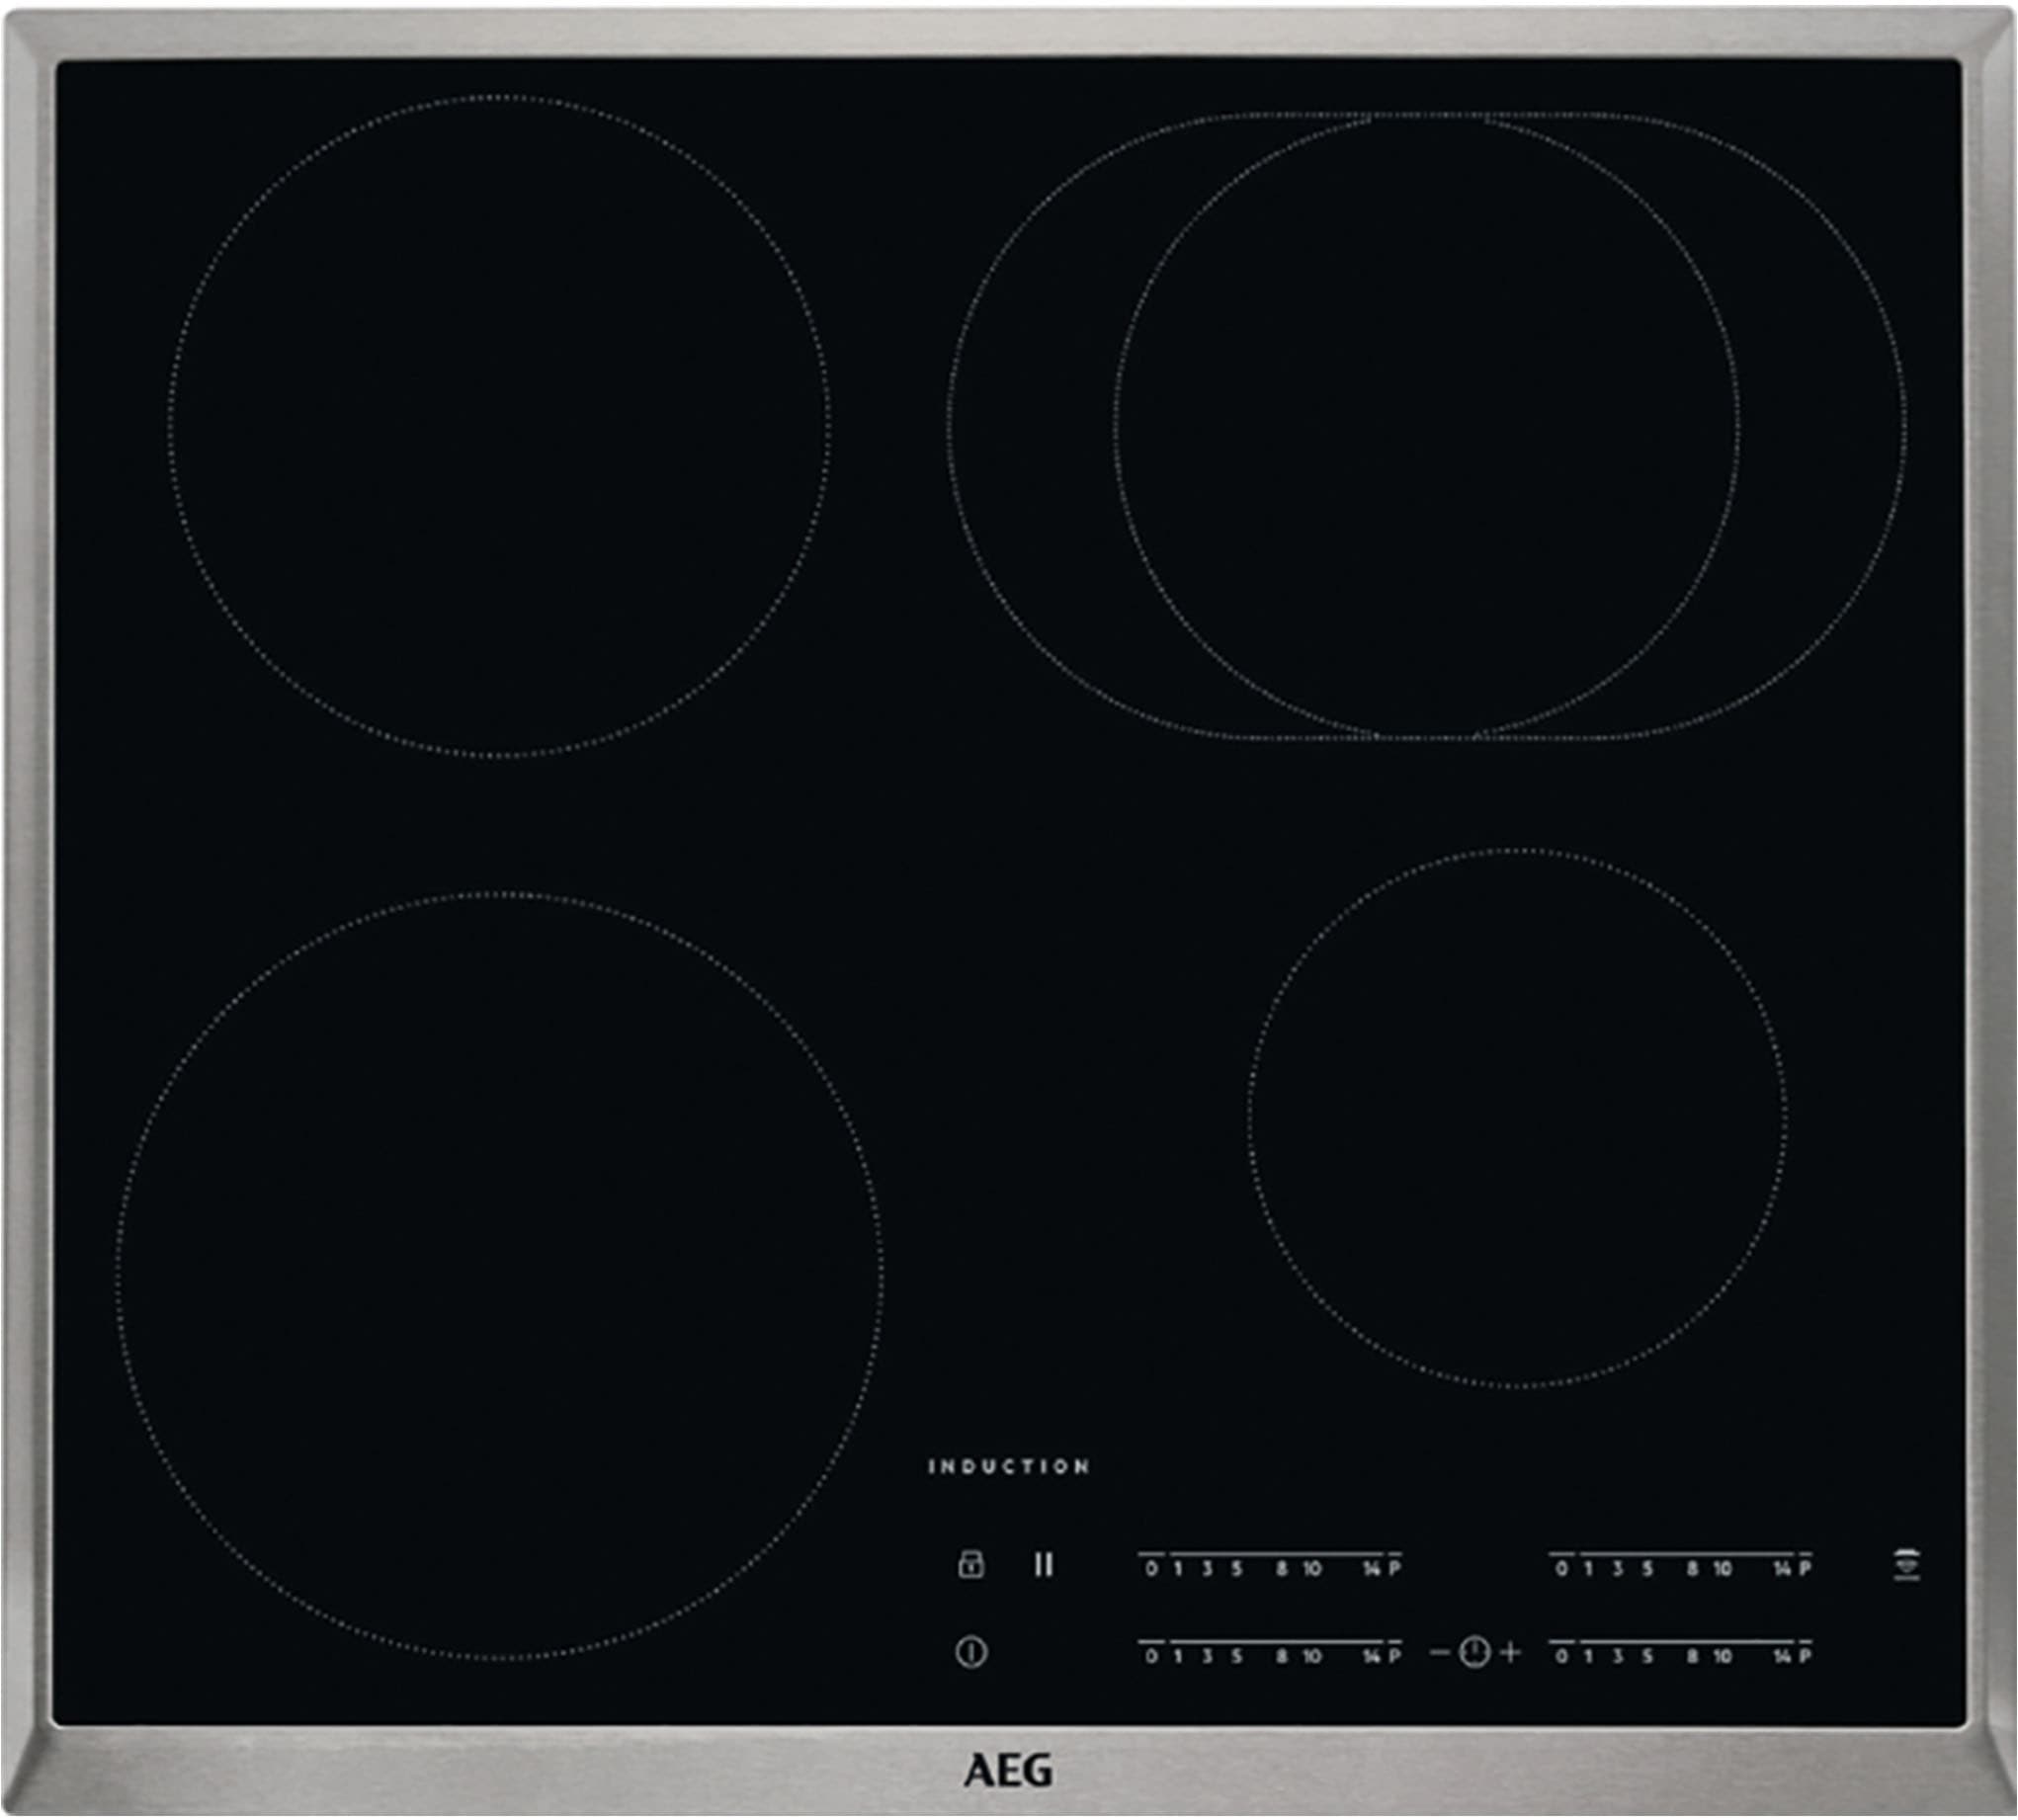 nobilia® Küchenzeile »"Easytouch premium"«, vormontiert, Ausrichtung wählbar, Breite 180 cm, mit E-Geräten